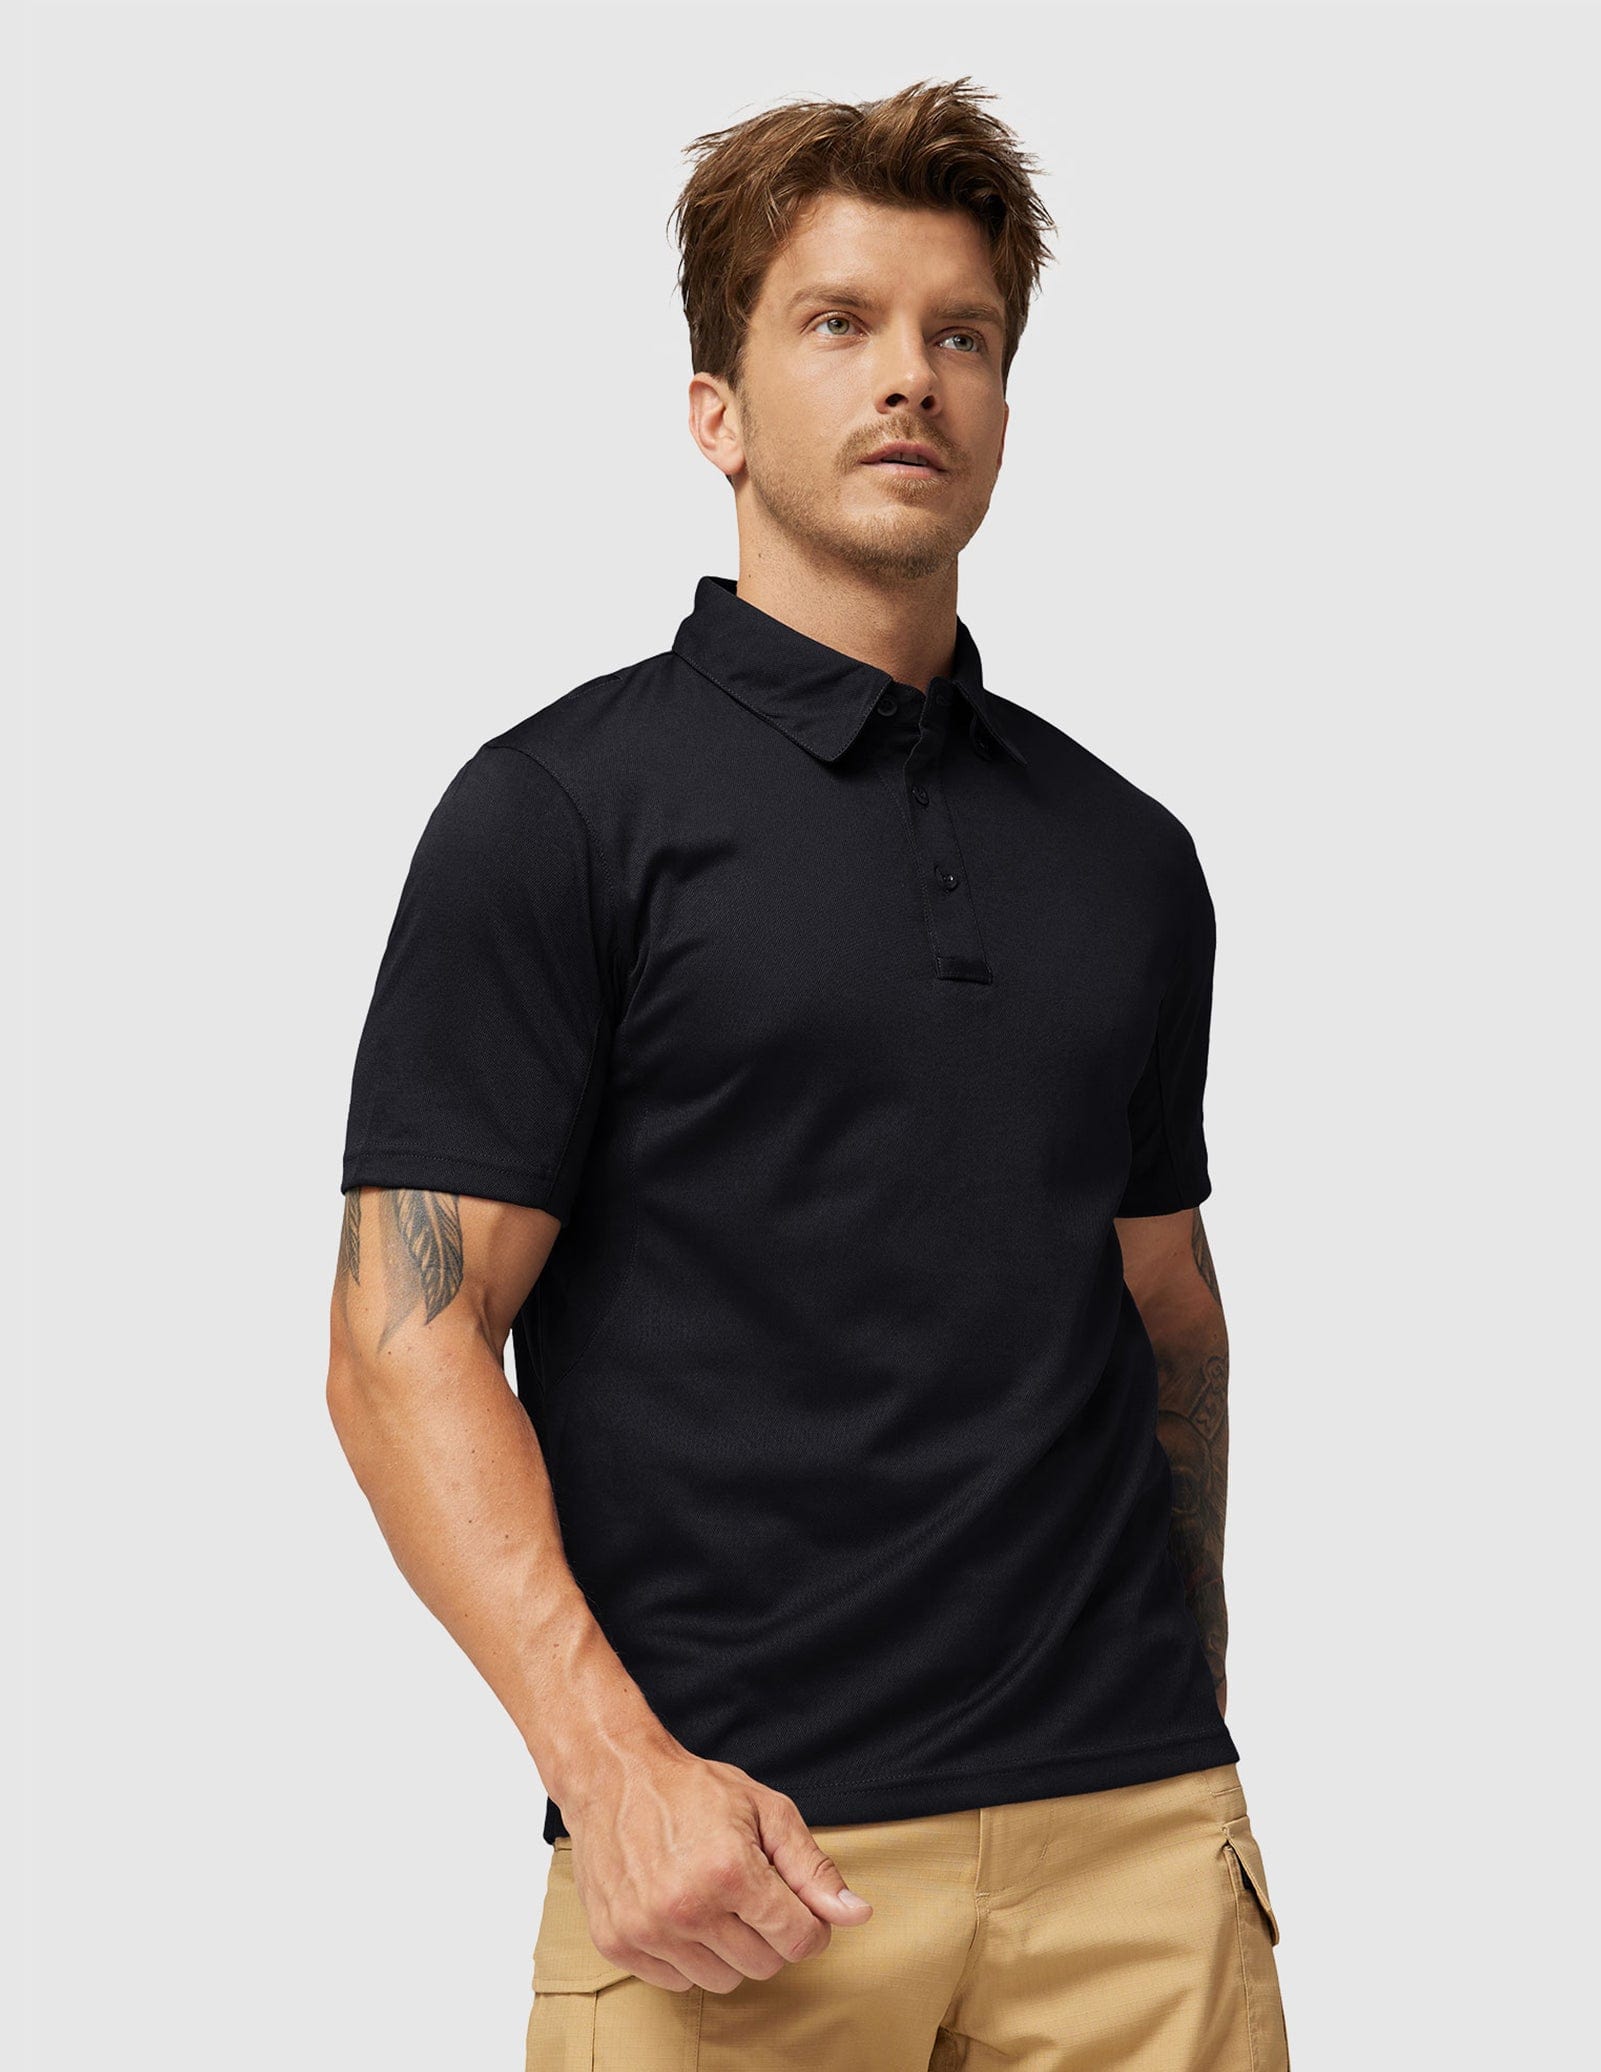 Men's Tactical Polo Shirts Outdoor Performance Collared Shirt Men Polo Black / S MIER